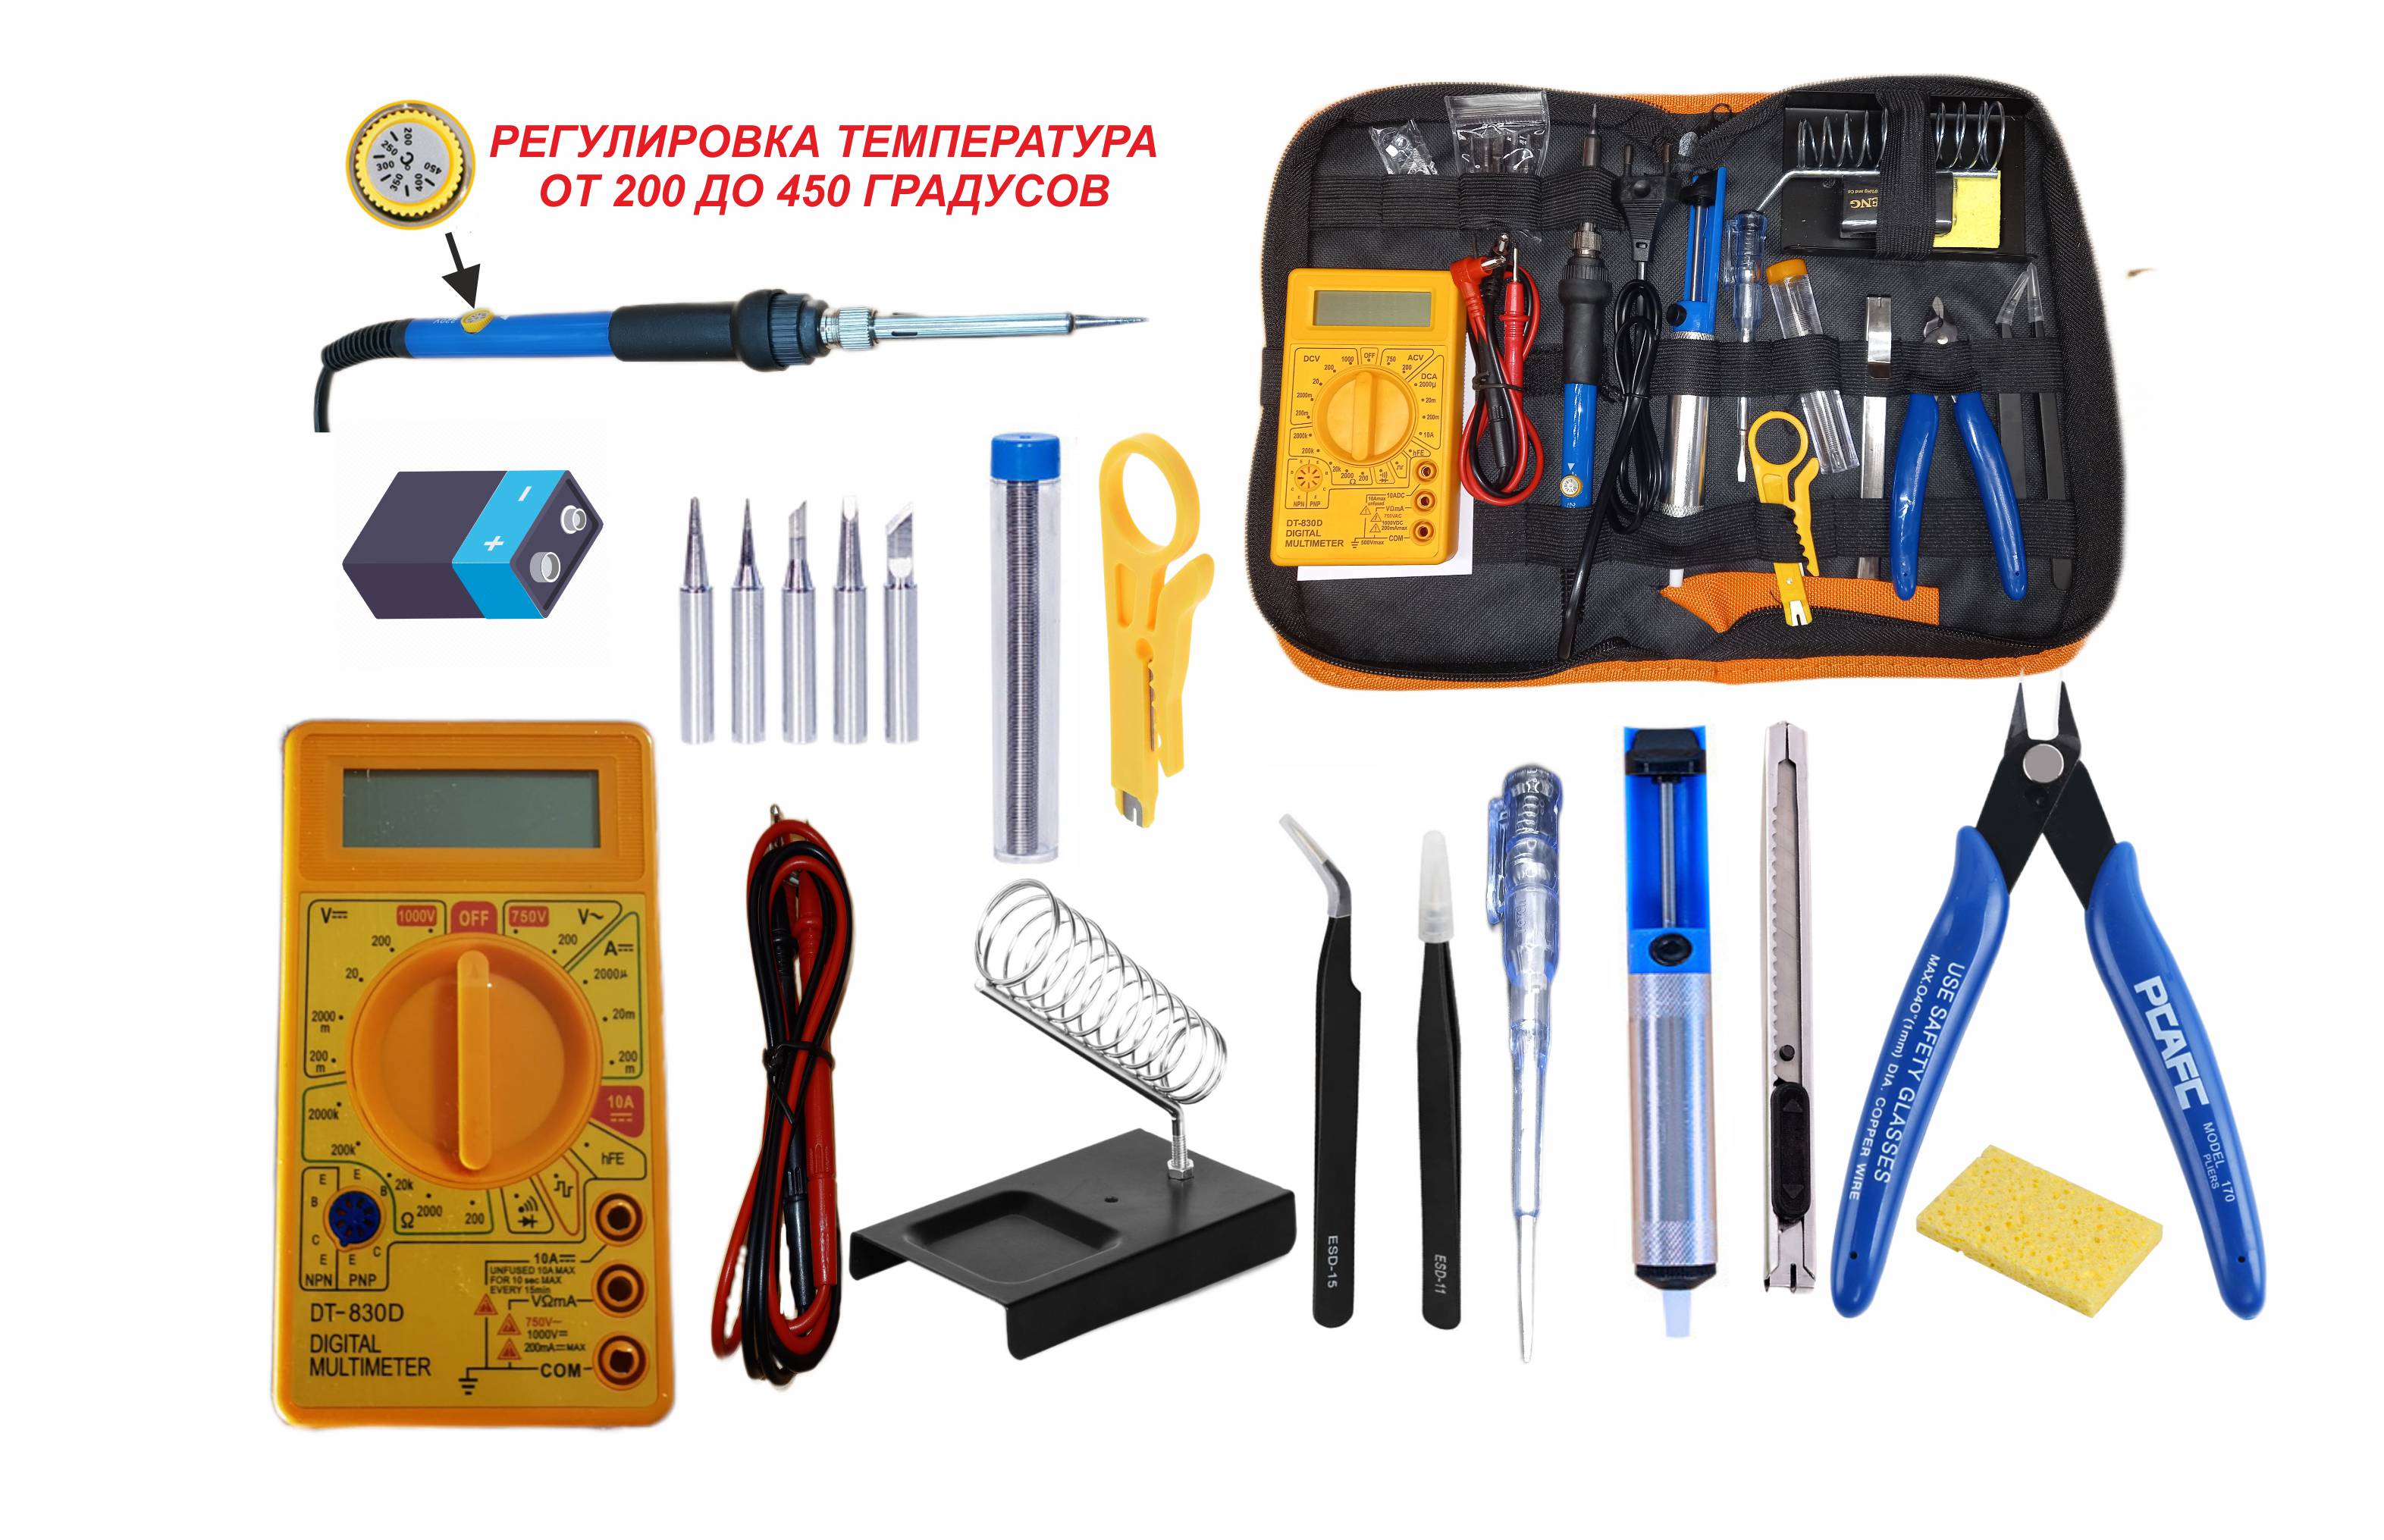 Набор для пайки ЗВЕЗДА 3-4 с регулировкой температуры,12 предметов,мультиметр DT-830D набор инструментов для пайки baku